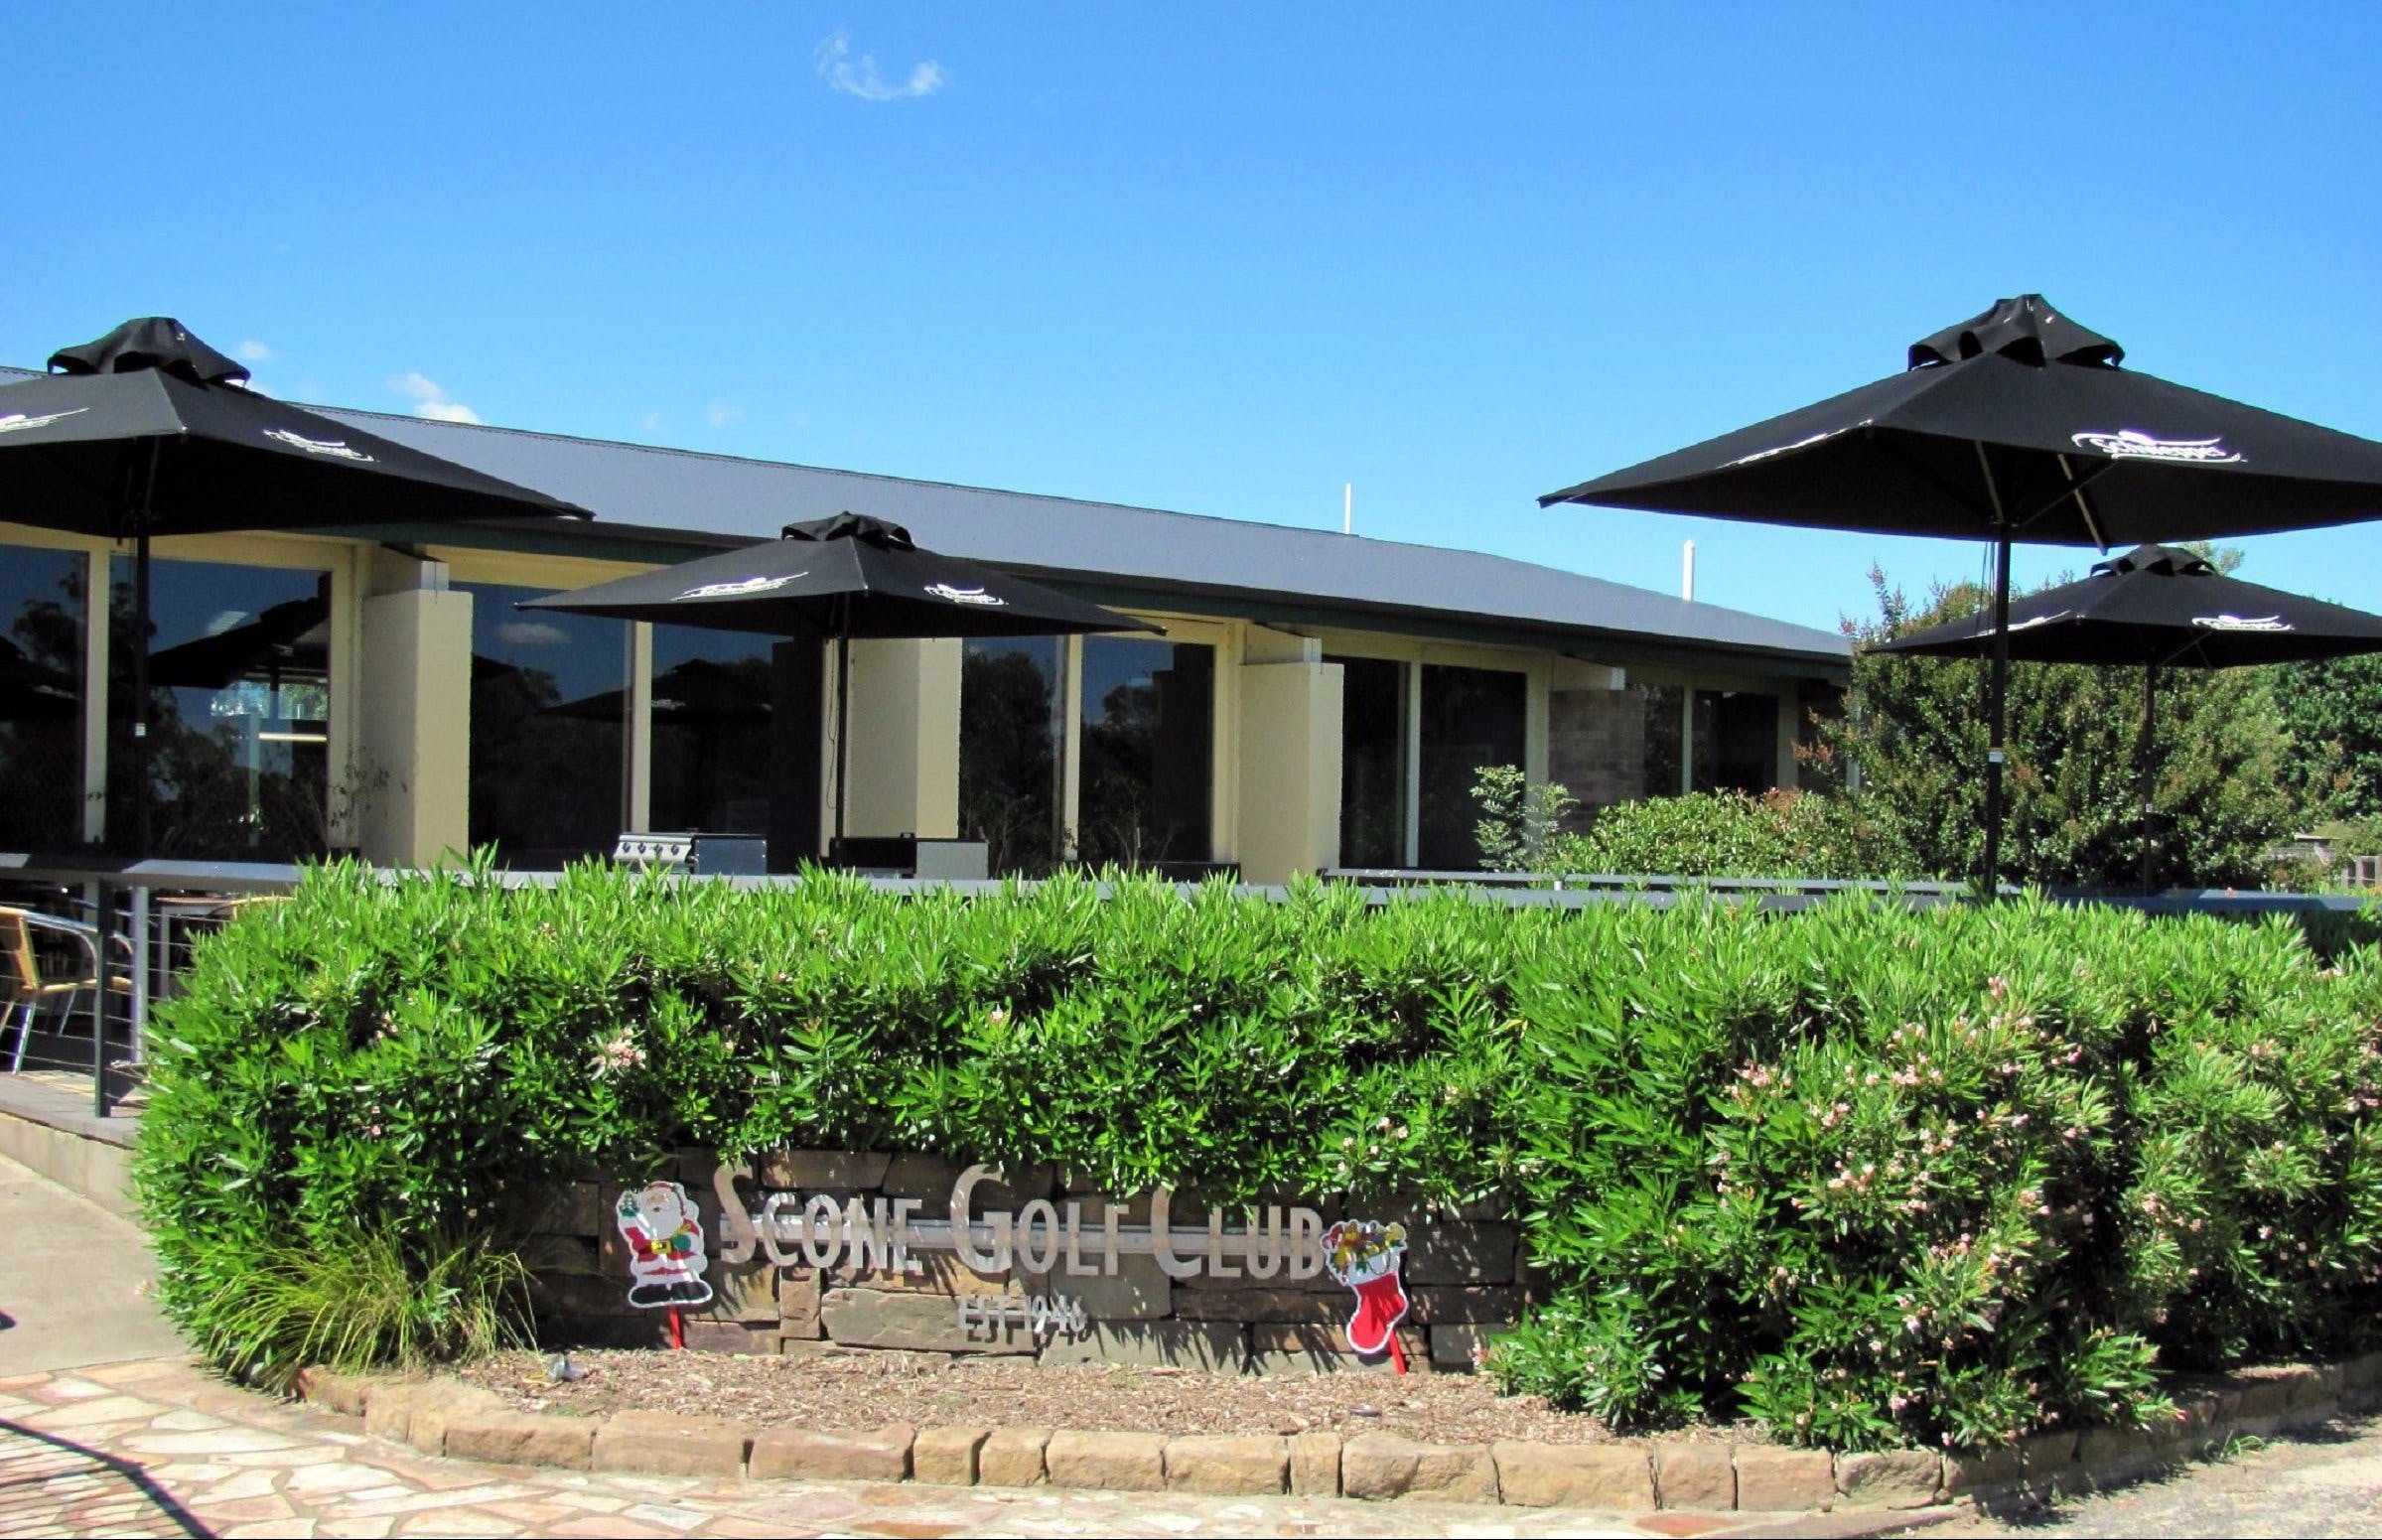 Scone Golf Club - Accommodation Kalgoorlie